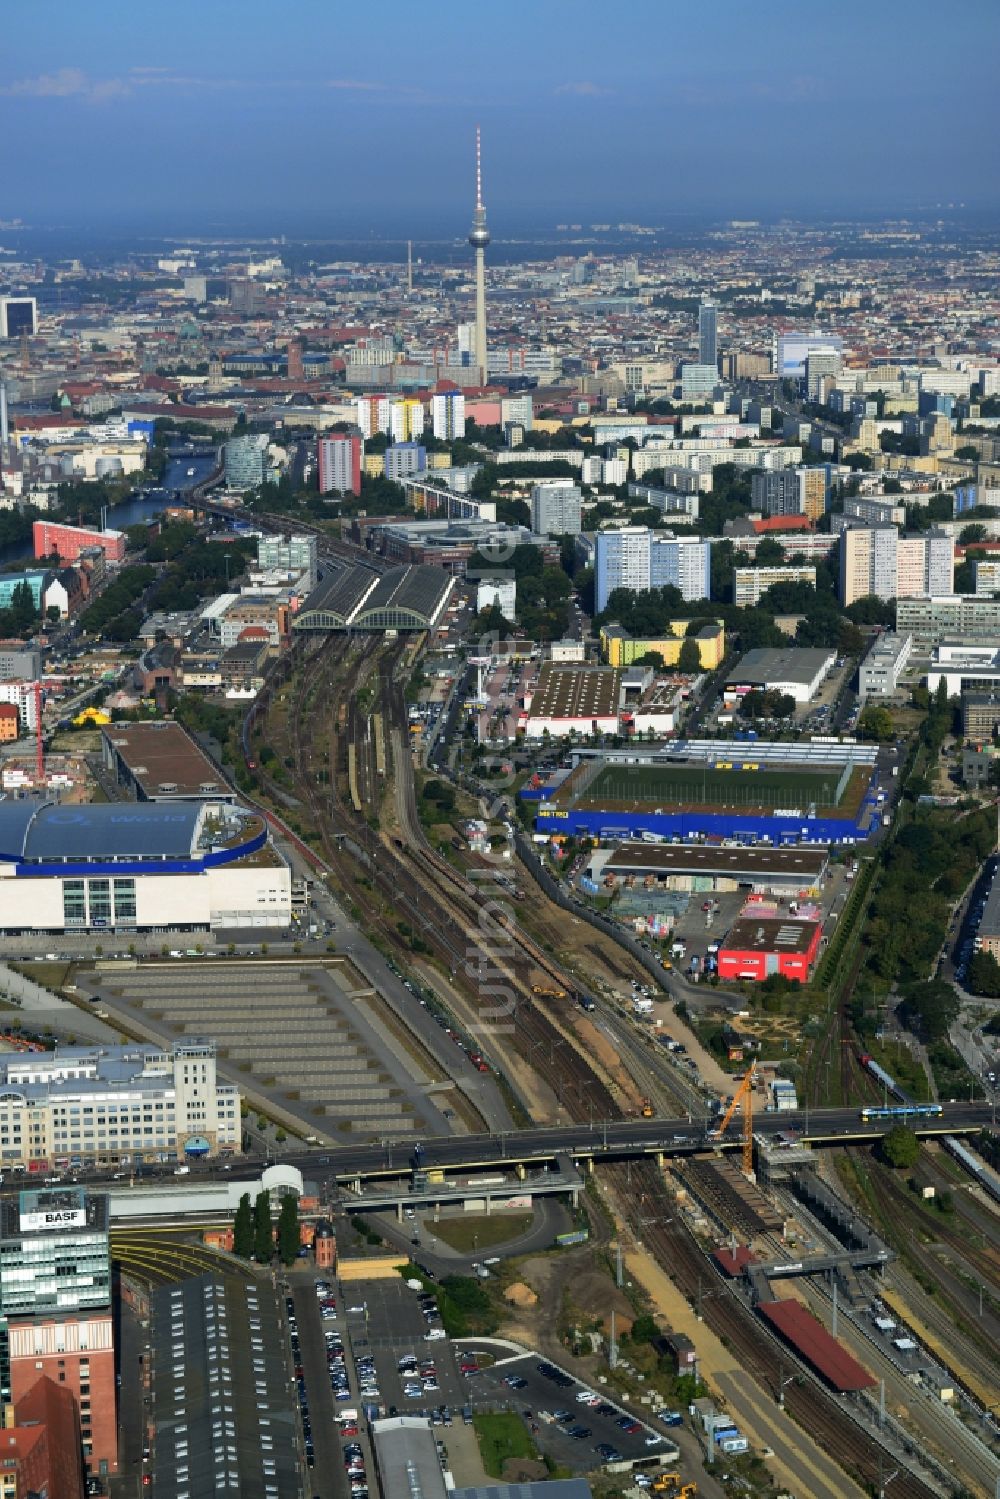 Luftaufnahme Berlin Friedrichshain - Strecken- Ausbau Bahnhof -Warschauer Straße im Stadtteil Friedrichshain von Berlin